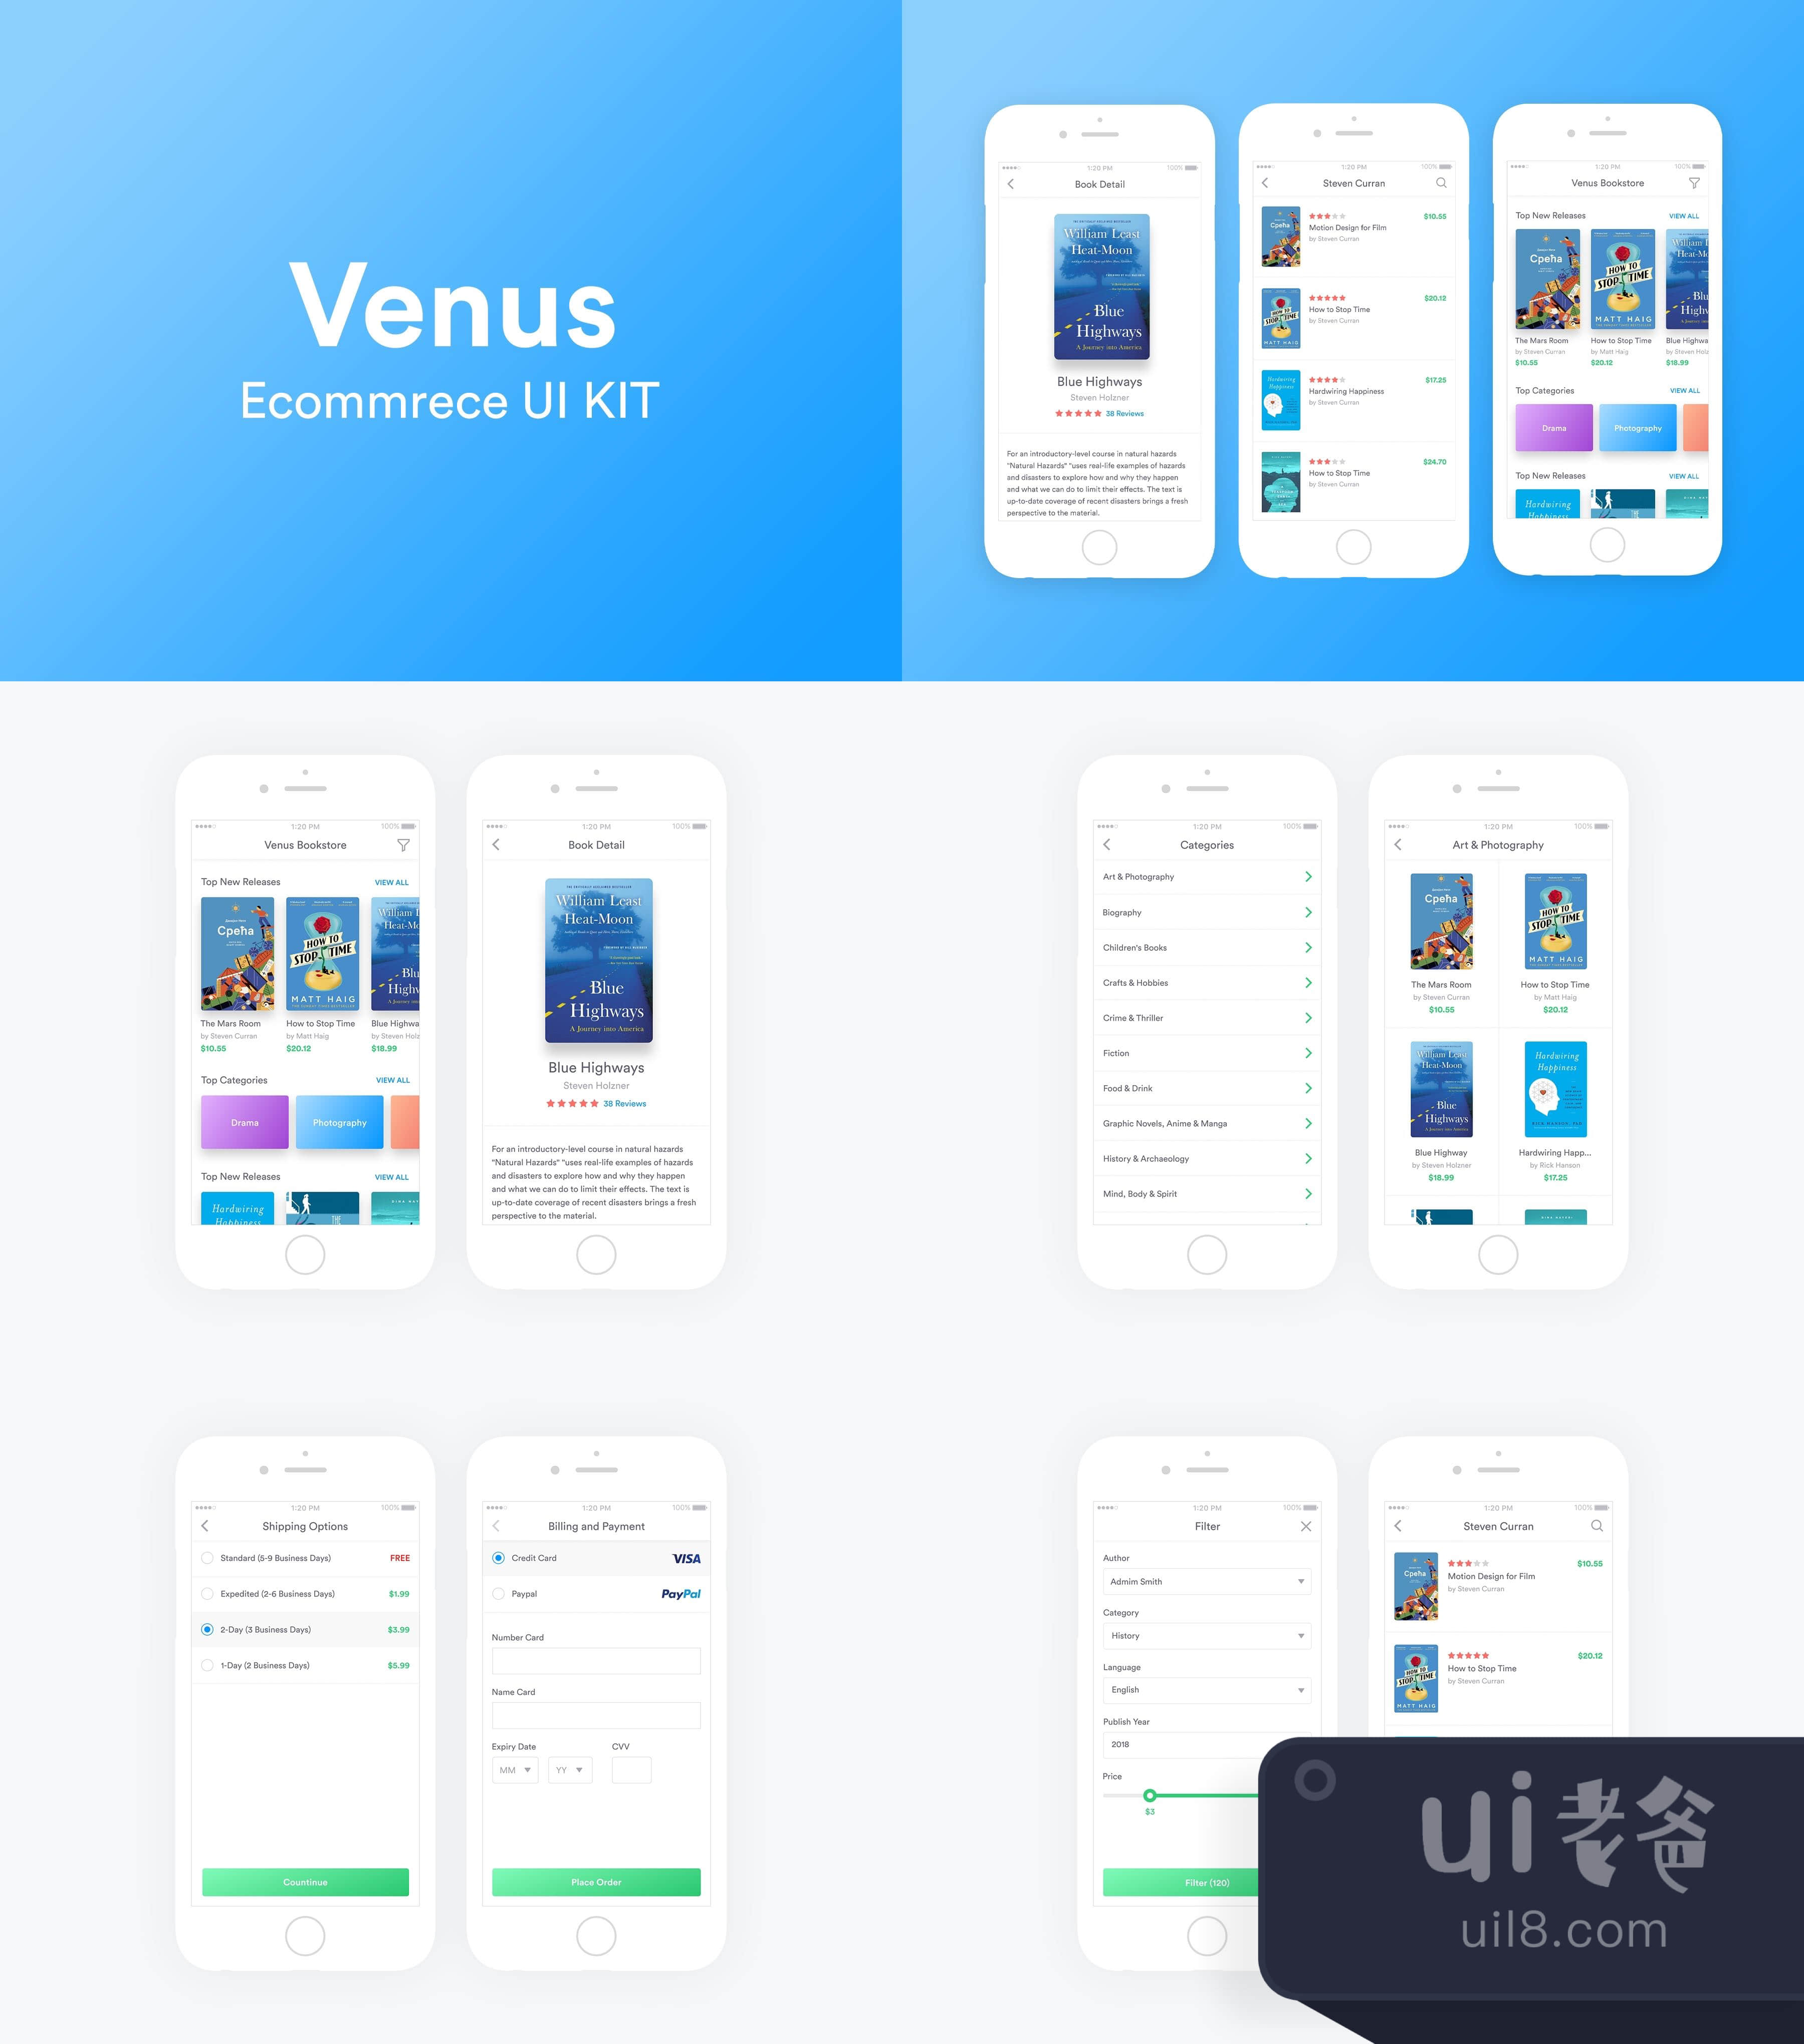 维纳斯电商UI包 (Venus Ecommerce UI Kit)插图1